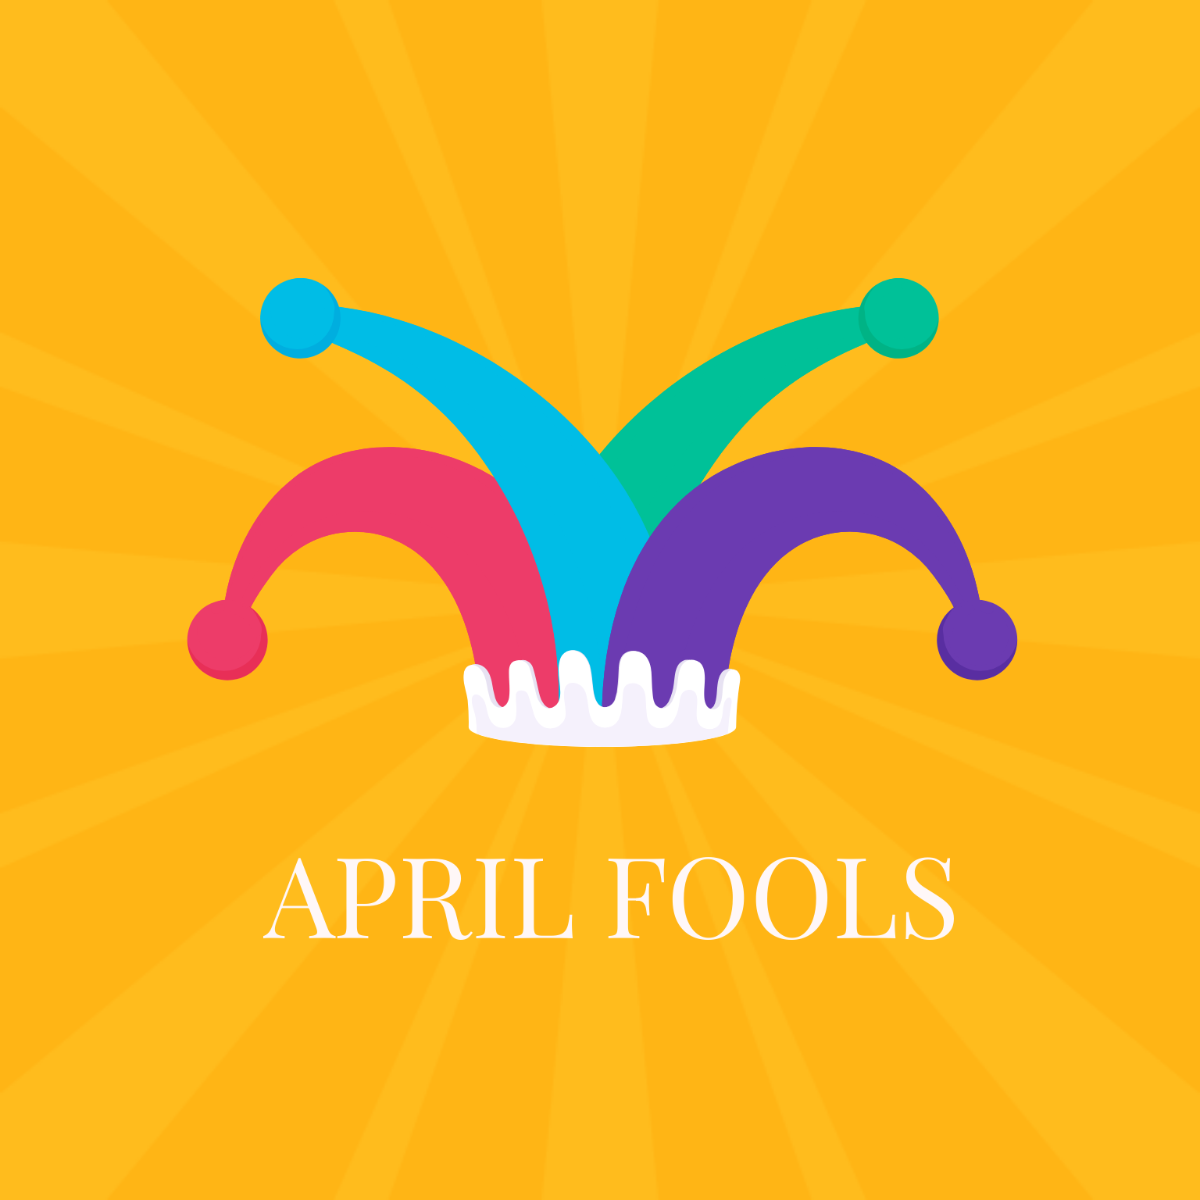 April Fools’ Day Symbol Template